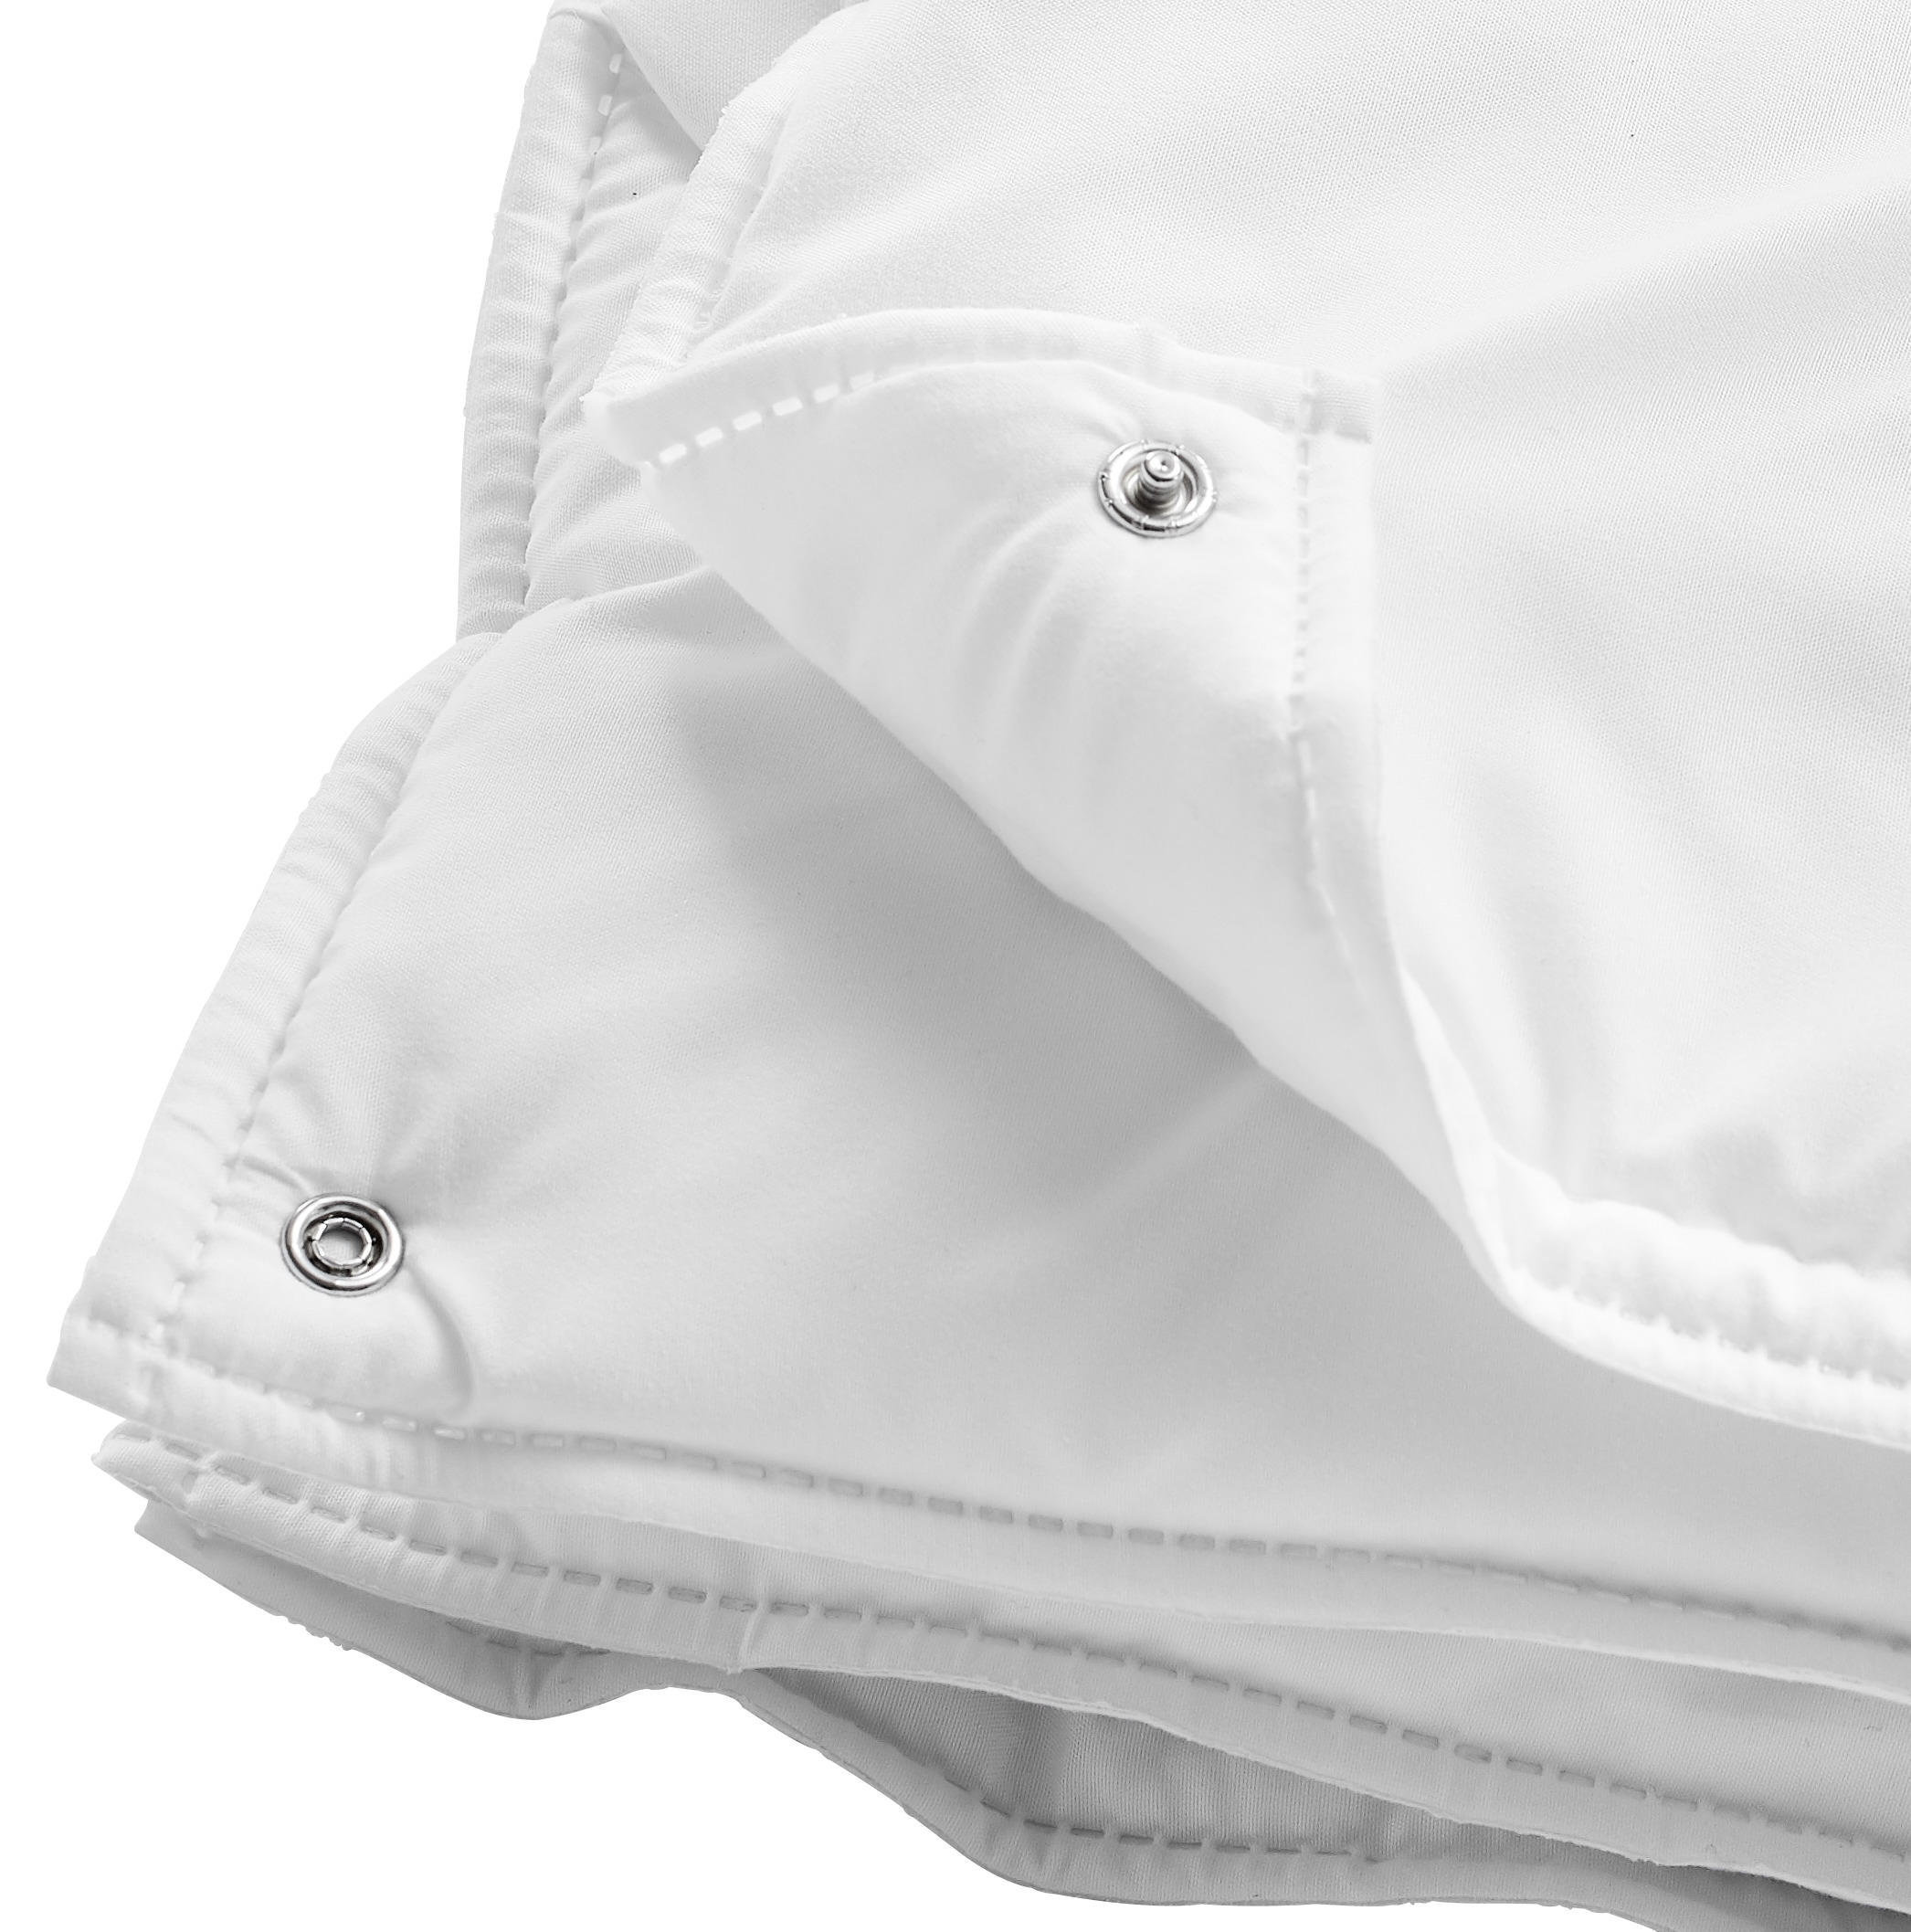 VIERJAHRESZEITENBETT  Oviedo  135/200 cm   - Weiß, KONVENTIONELL, Textil (135/200cm) - Sleeptex